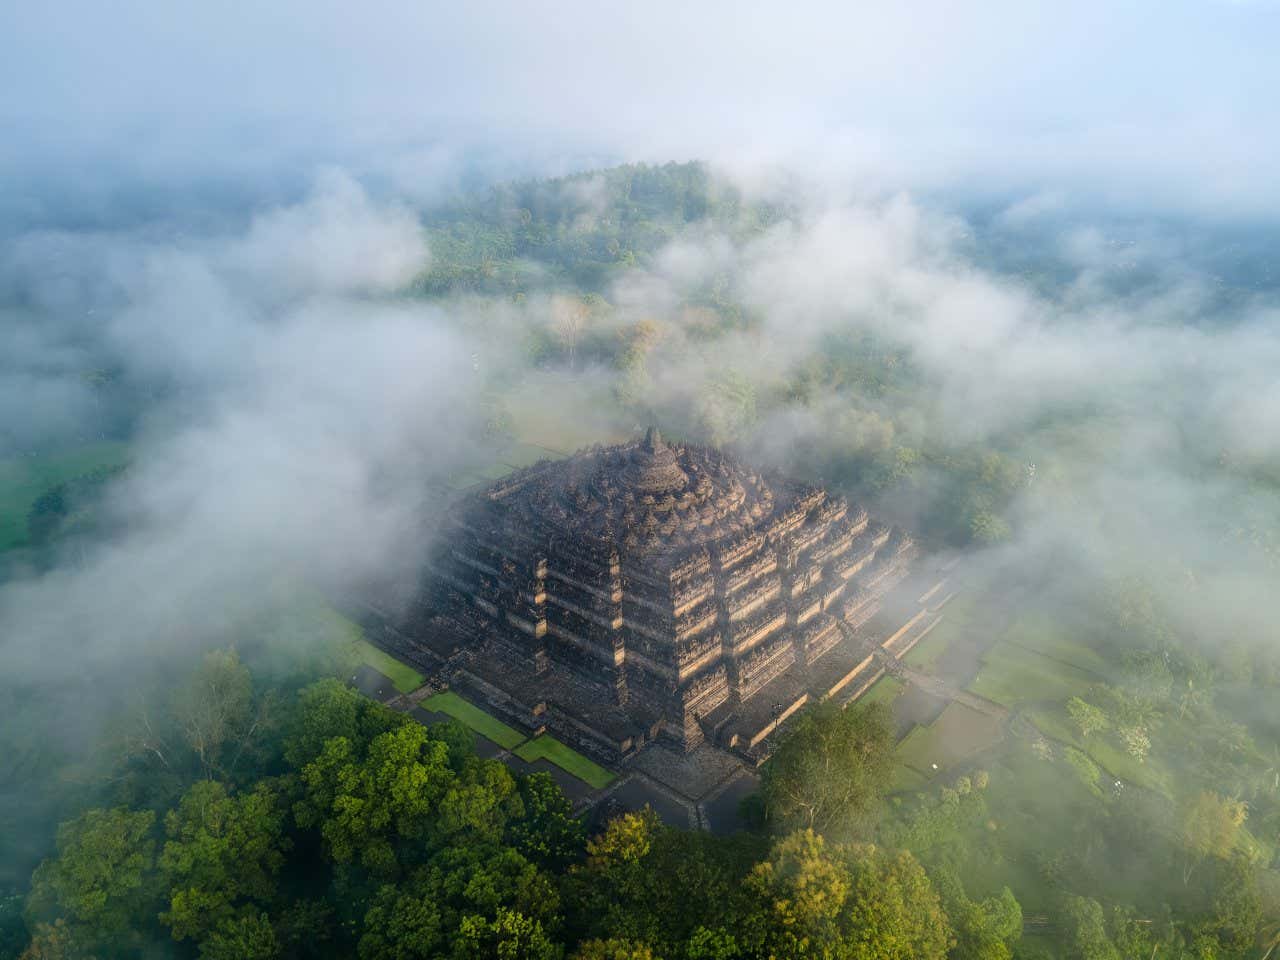 Le temple de Borobudur vu d'en haut, les nuages recouvrant partiellement le temple et la forêt qui l'entoure